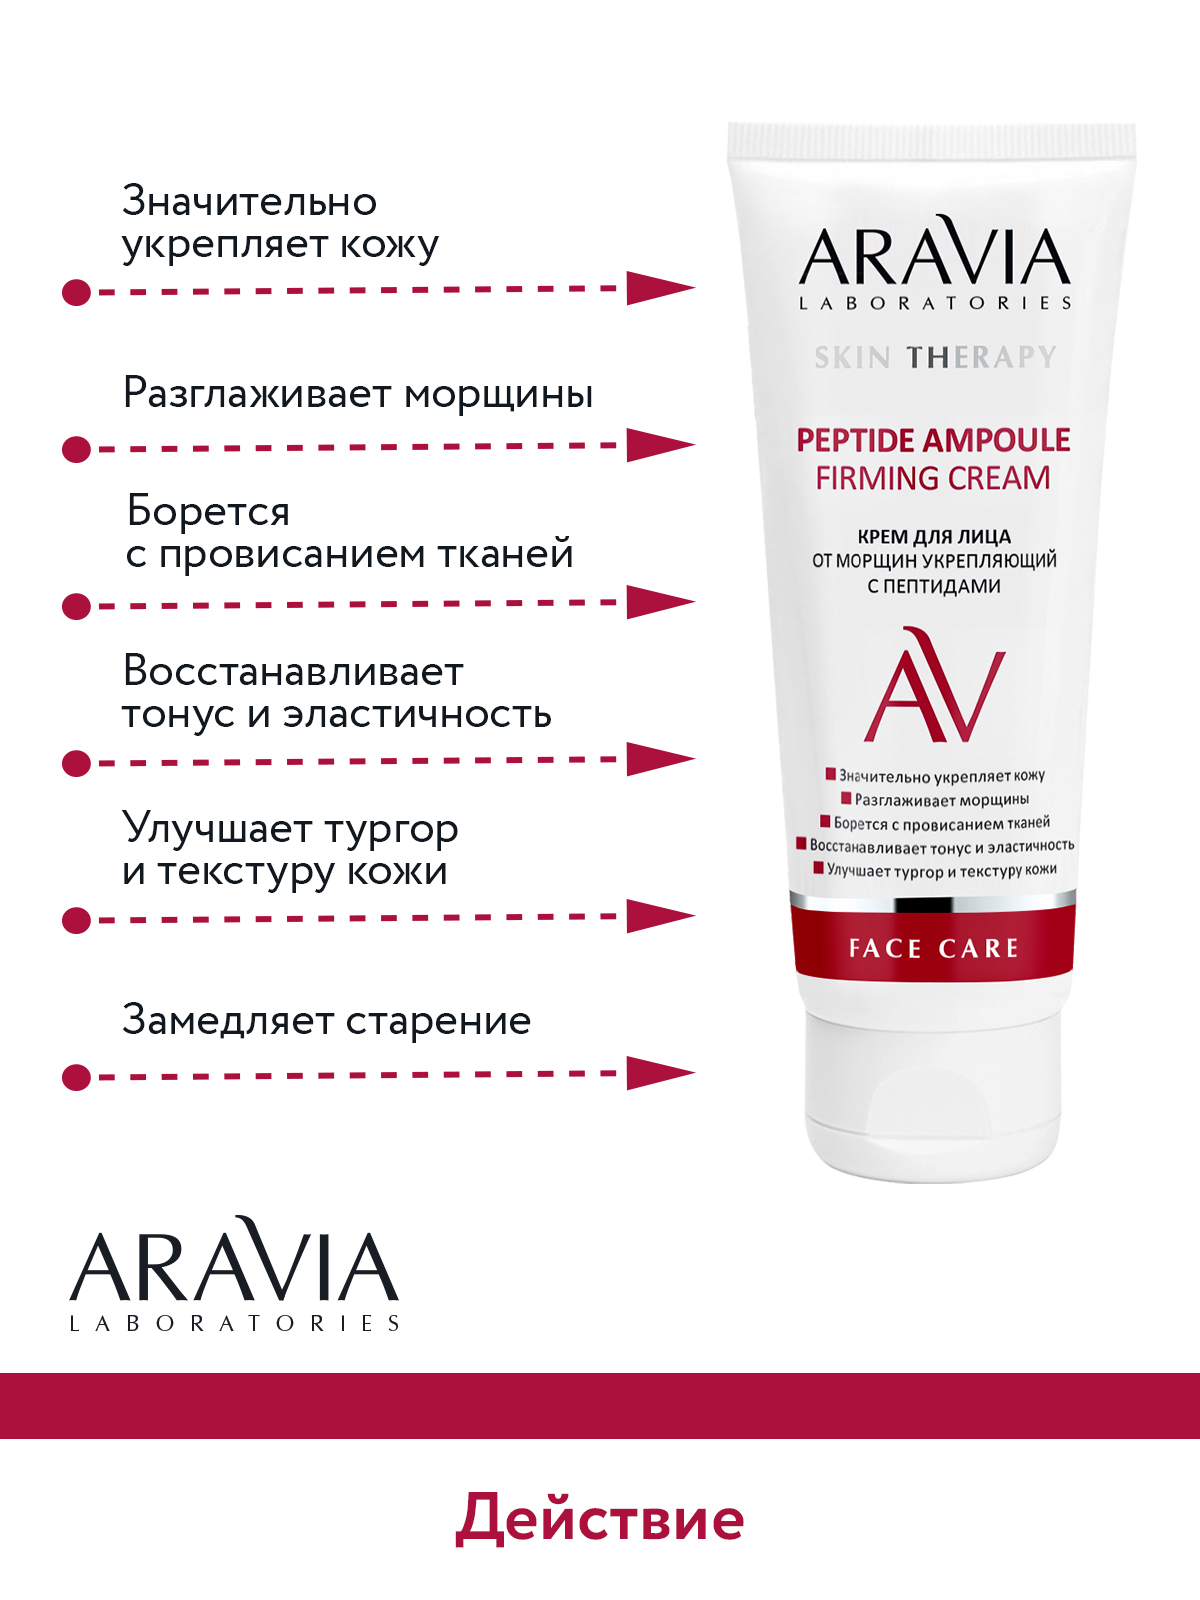 Крем для лица ARAVIA Laboratories от морщин с пептидами Peptide Ampoule Firming Cream 50 мл - фото 5